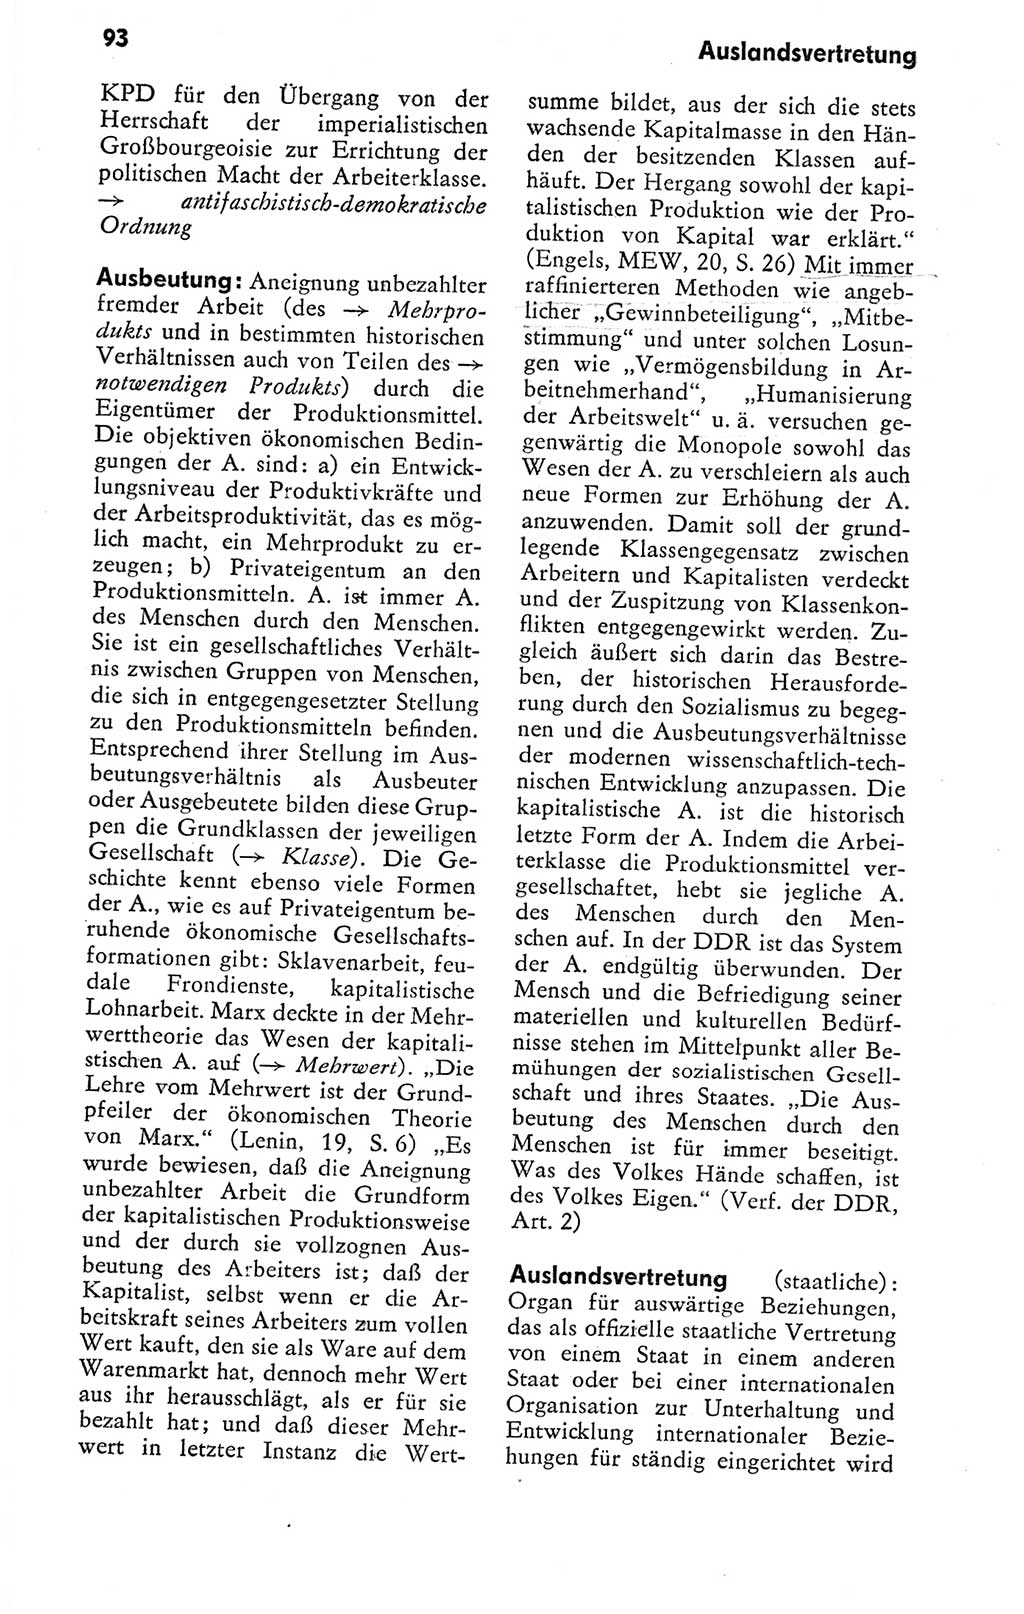 Kleines politisches Wörterbuch [Deutsche Demokratische Republik (DDR)] 1978, Seite 93 (Kl. pol. Wb. DDR 1978, S. 93)